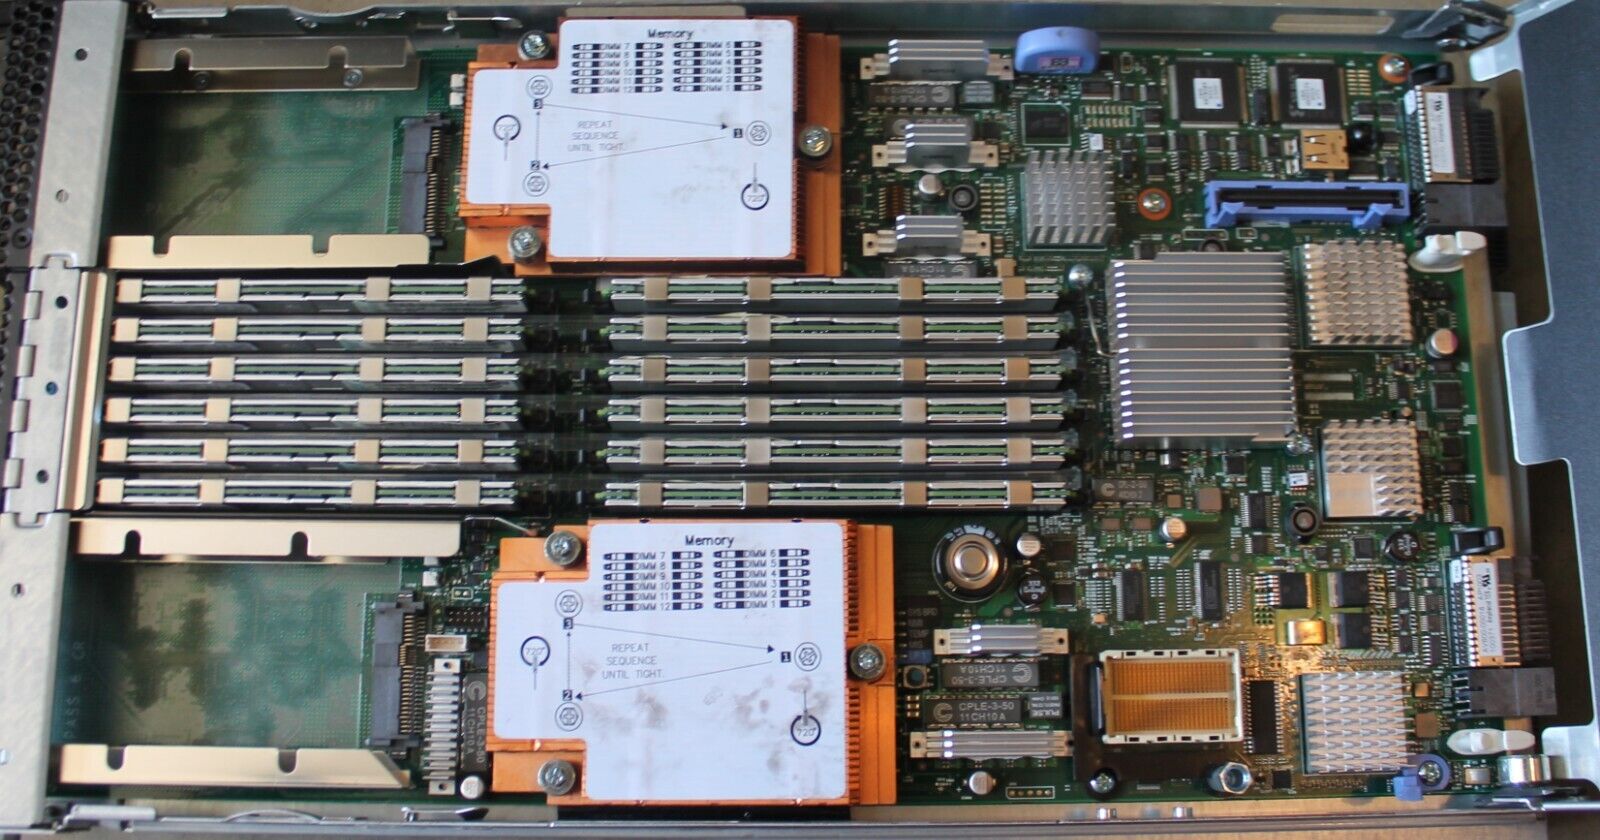 IBM 49Y5118 HS22 BladeCenter Blade Server System Board Preowned Refurbishedd